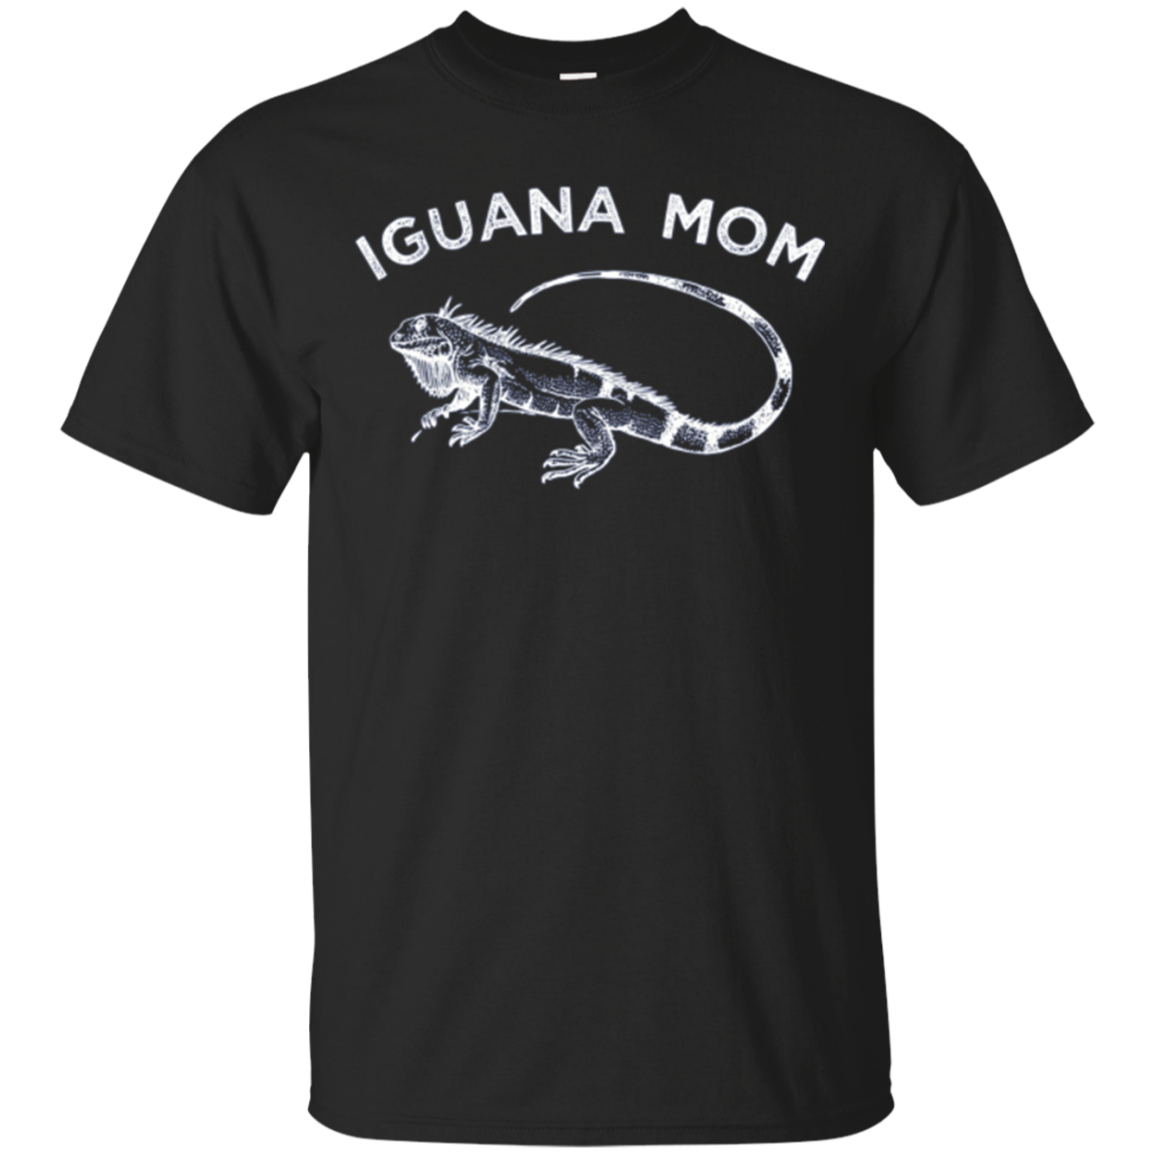 Iguana Mom Shirt, Funny Iguana Mother Apparel